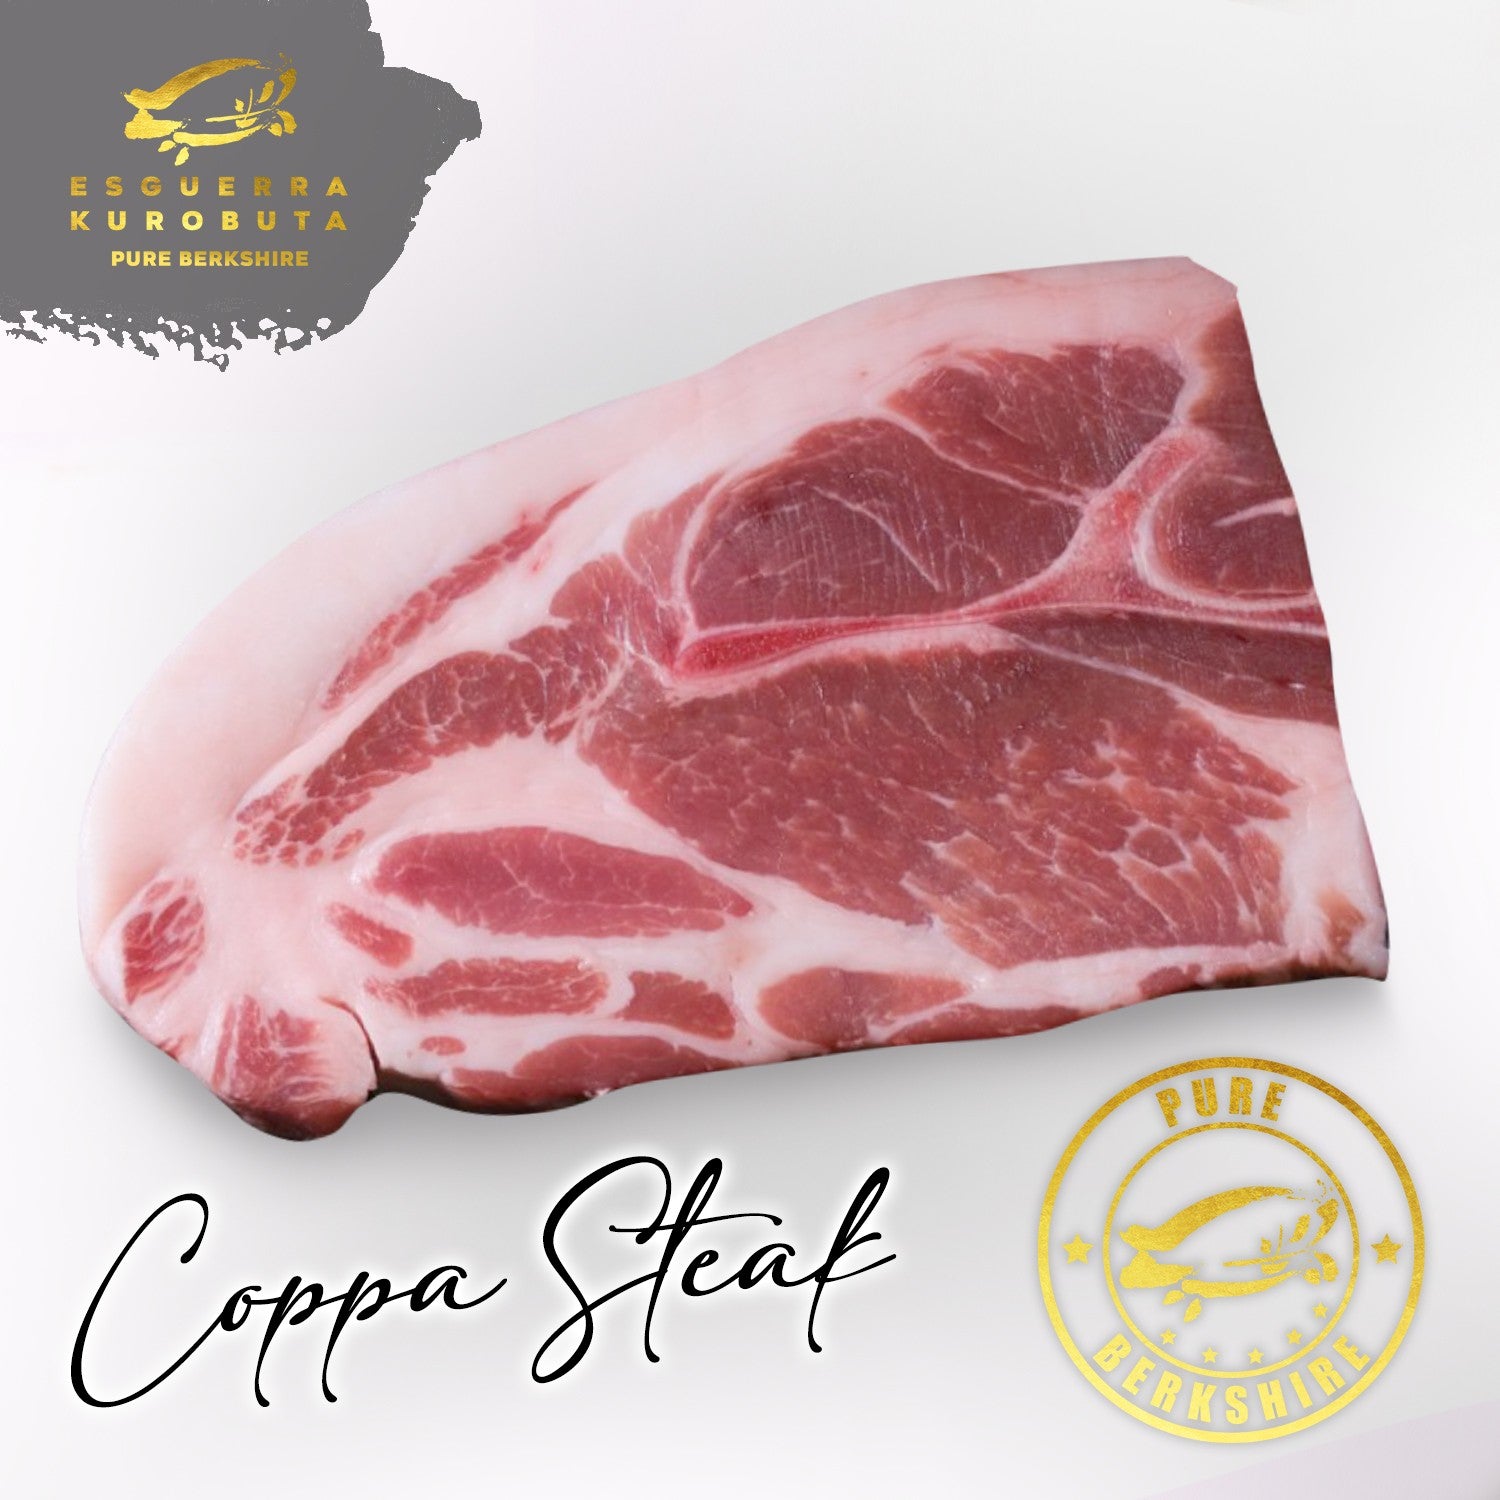 Coppa Steak Solo 301-400g